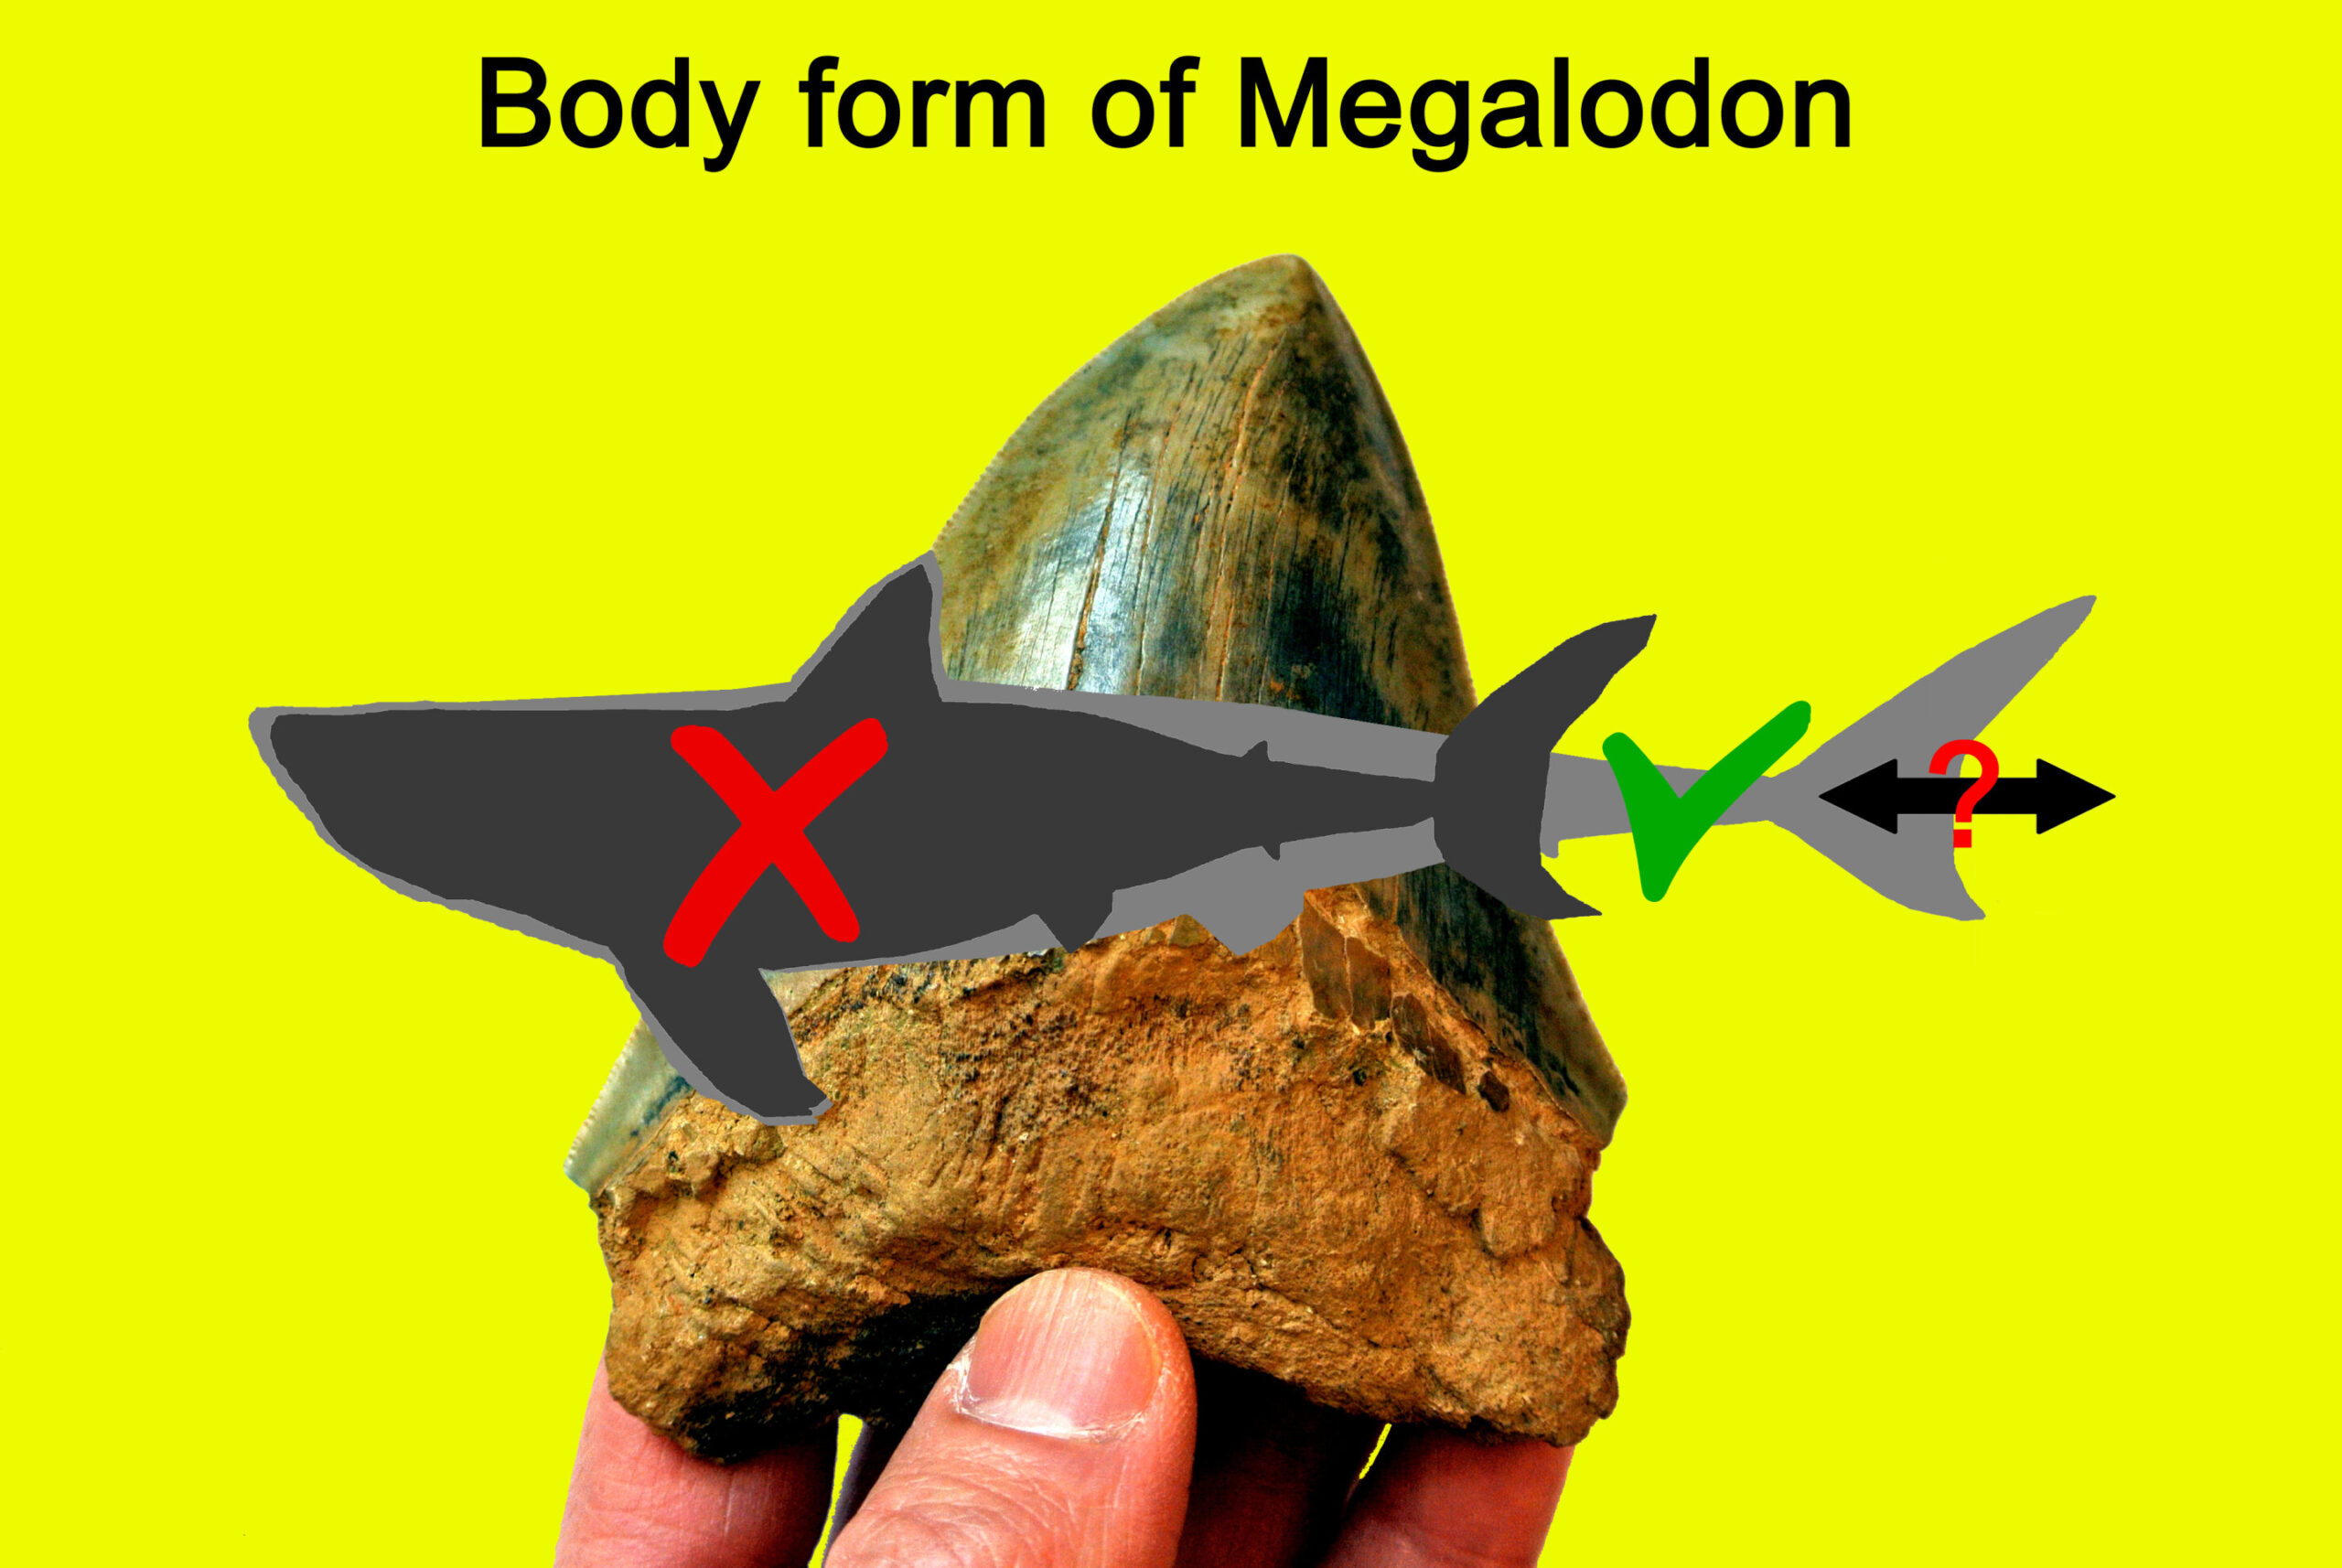 Studija baca novo svjetlo na oblik tijela Megalodona i njegovu ulogu u oblikovanju drevnog morskog života. Zasluge: Sveučilište DePaul.